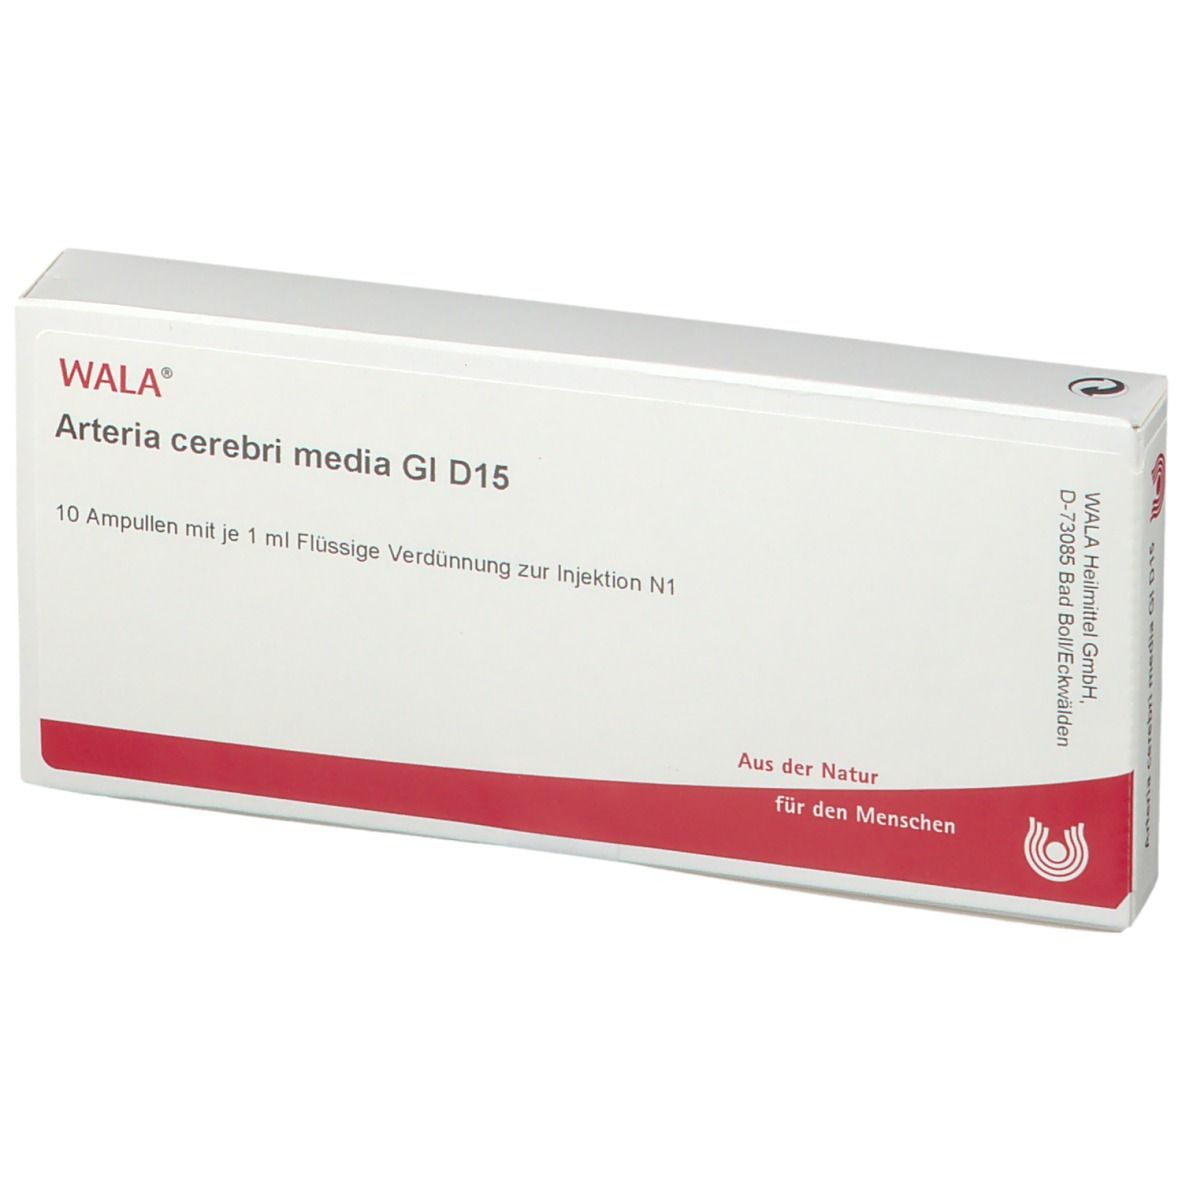 WALA® Arteria cerebri media Gl D 15